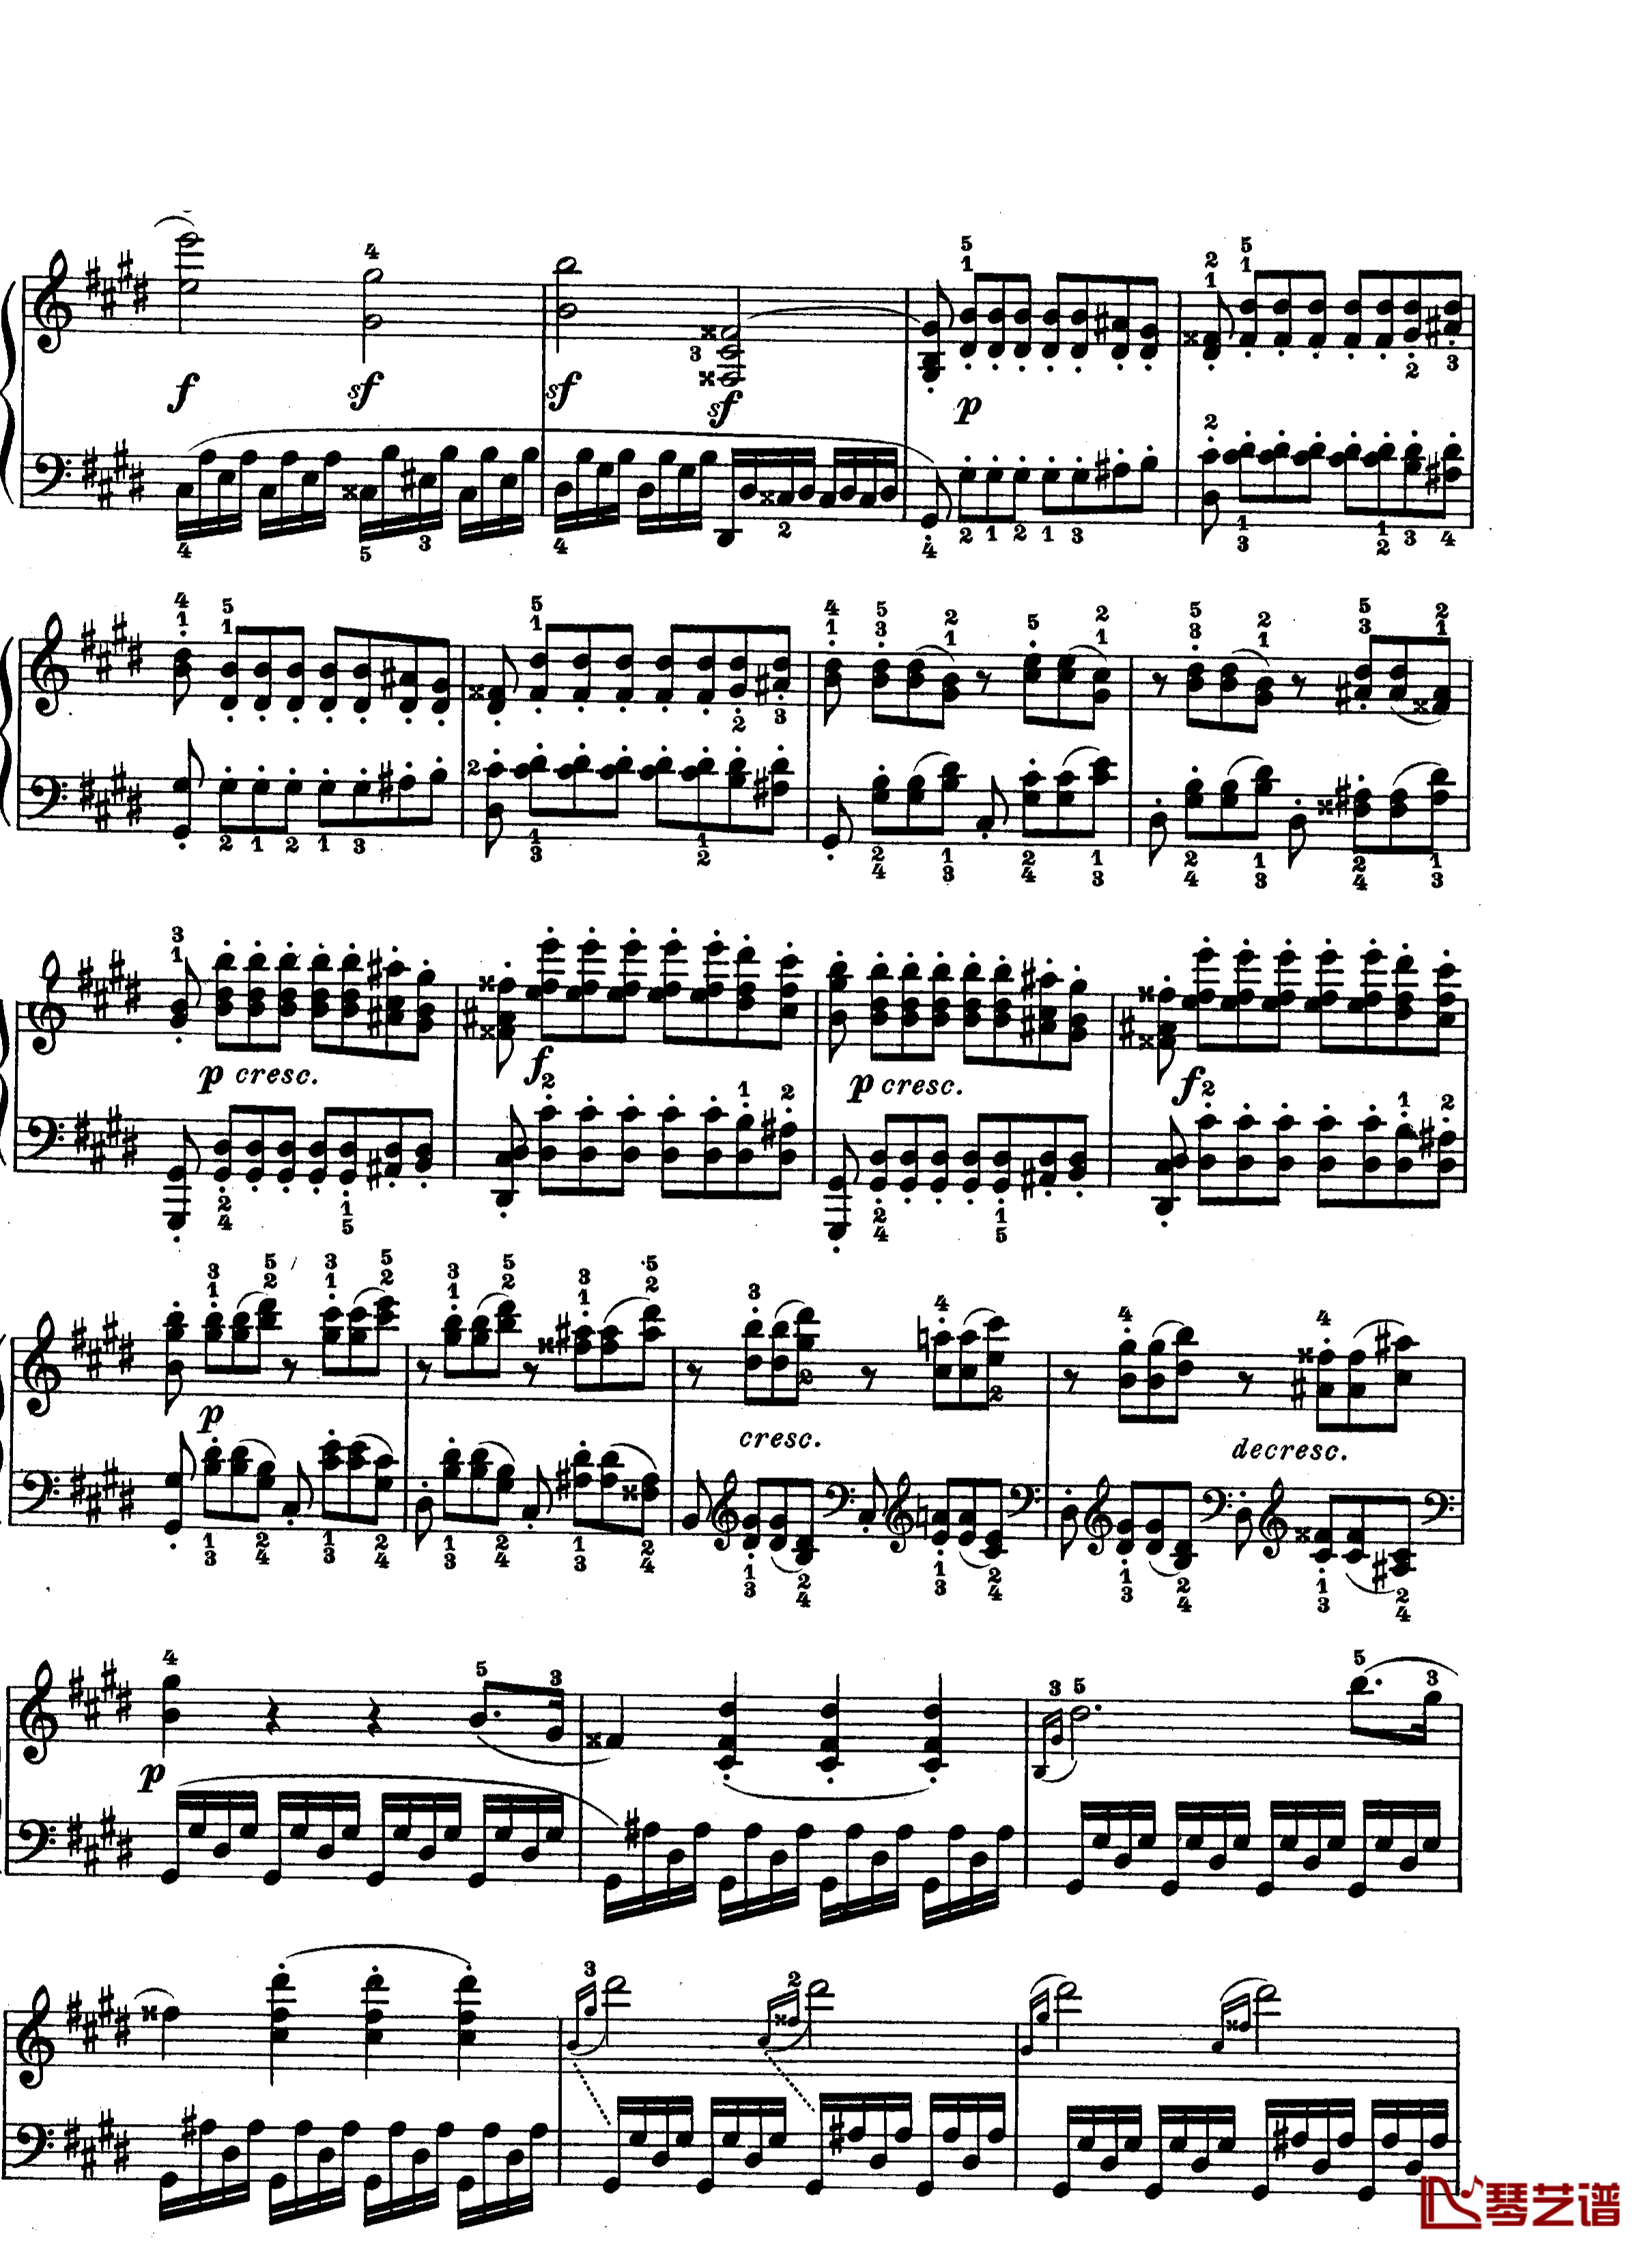 月光曲钢琴谱-第十四钢琴奏鸣曲-Op.27 No.2-贝多芬-beethoven7